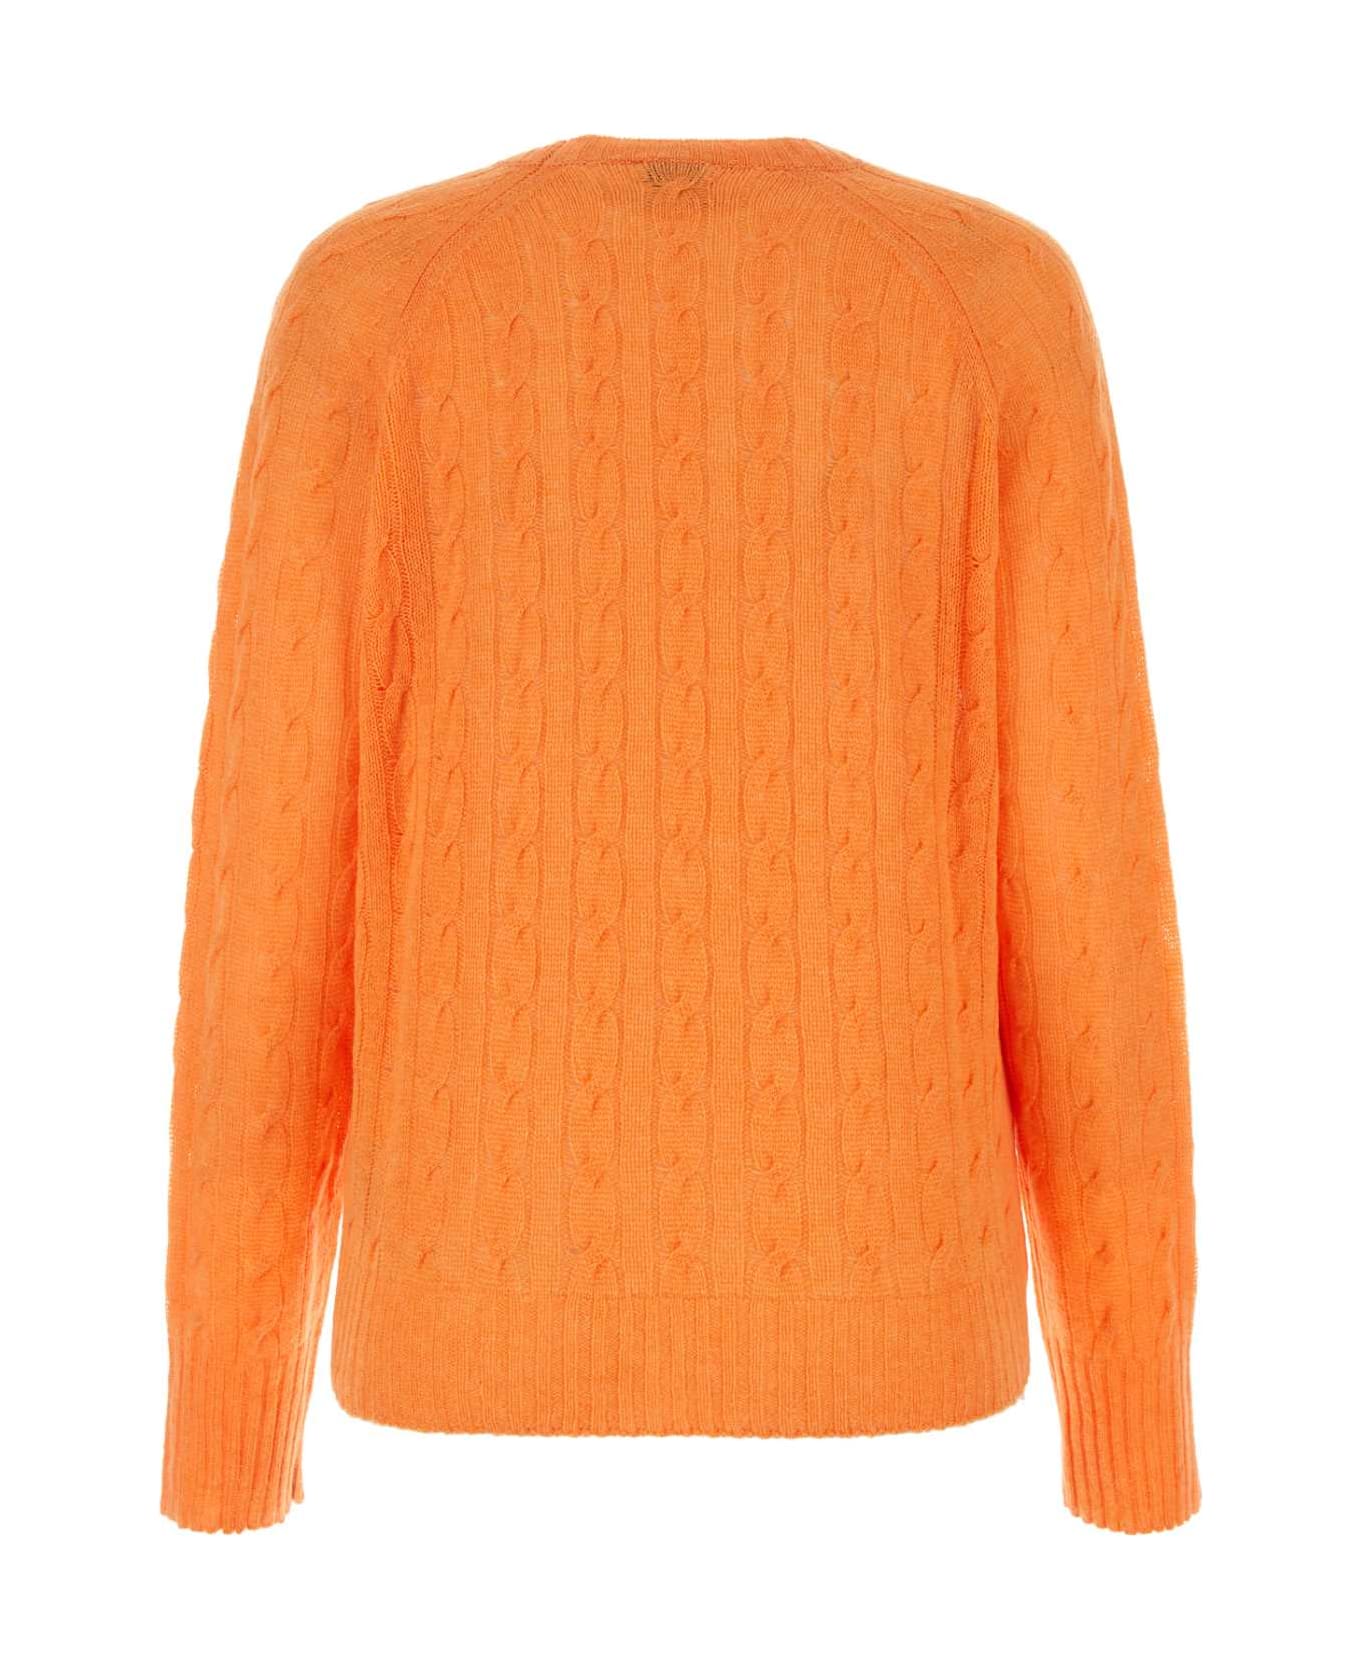 Etro Orange Cashmere Sweater - Orange ニットウェア